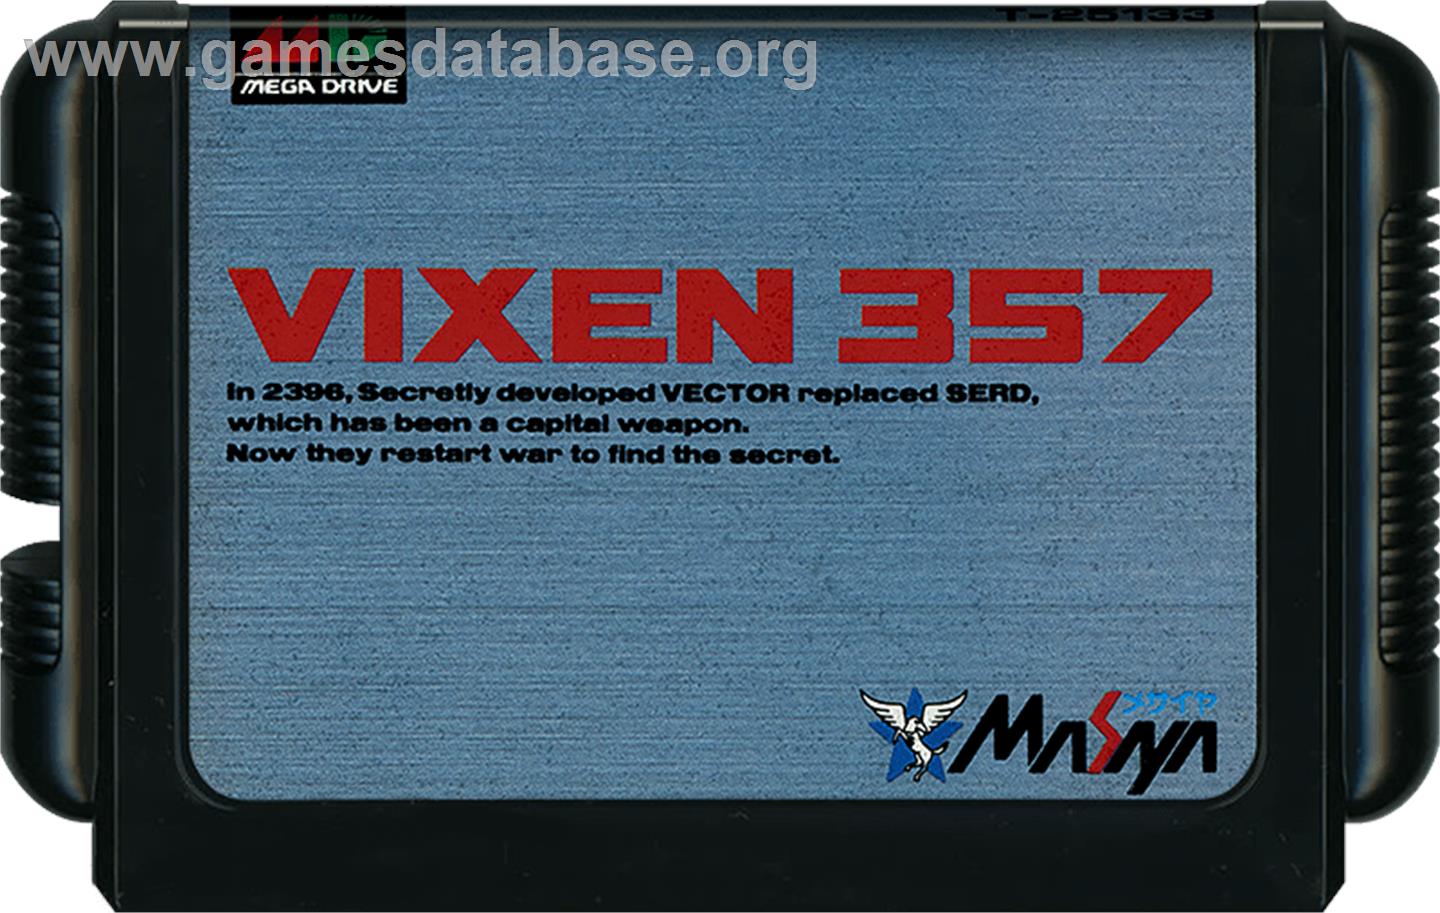 Vixen 357 - Sega Genesis - Artwork - Cartridge